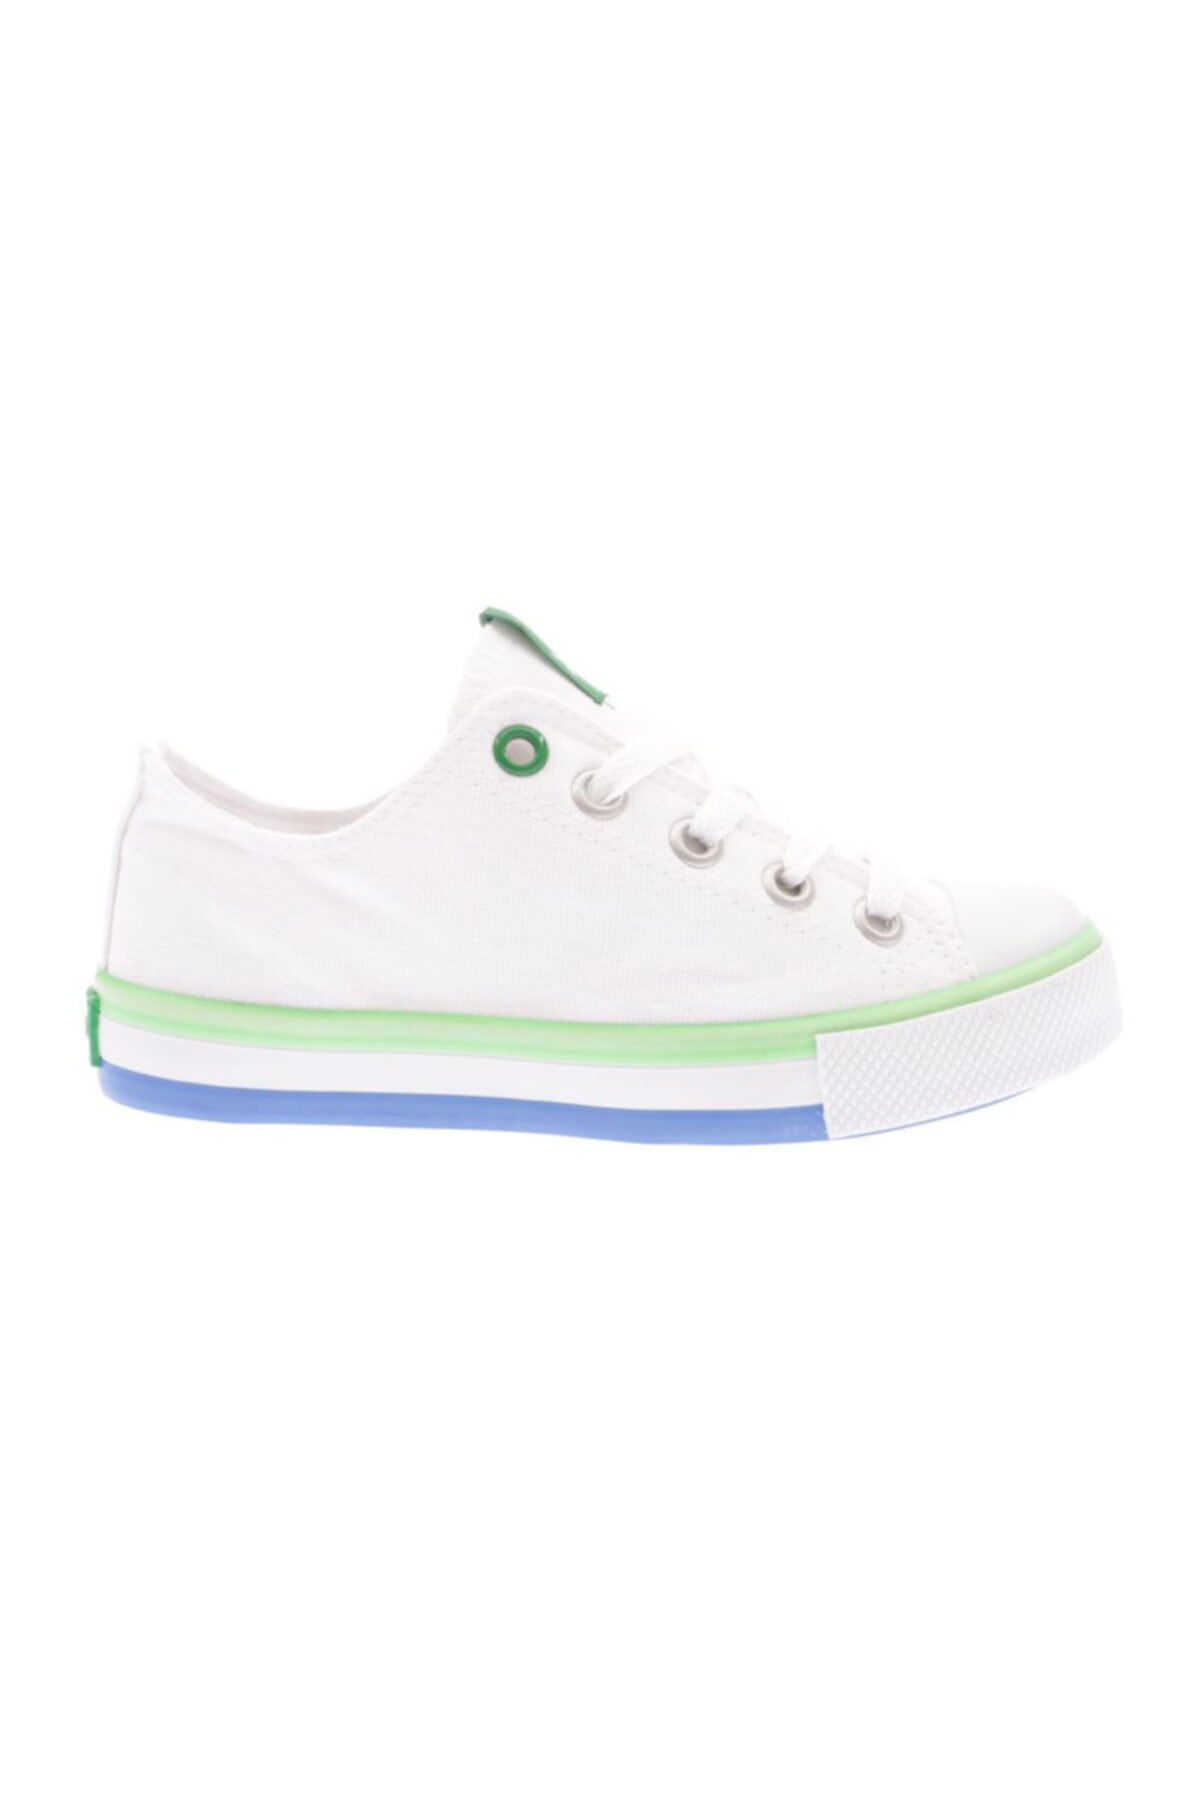 Benetton Unisex Çocuk Beyaz Spor Ayakkabı Bn-30175